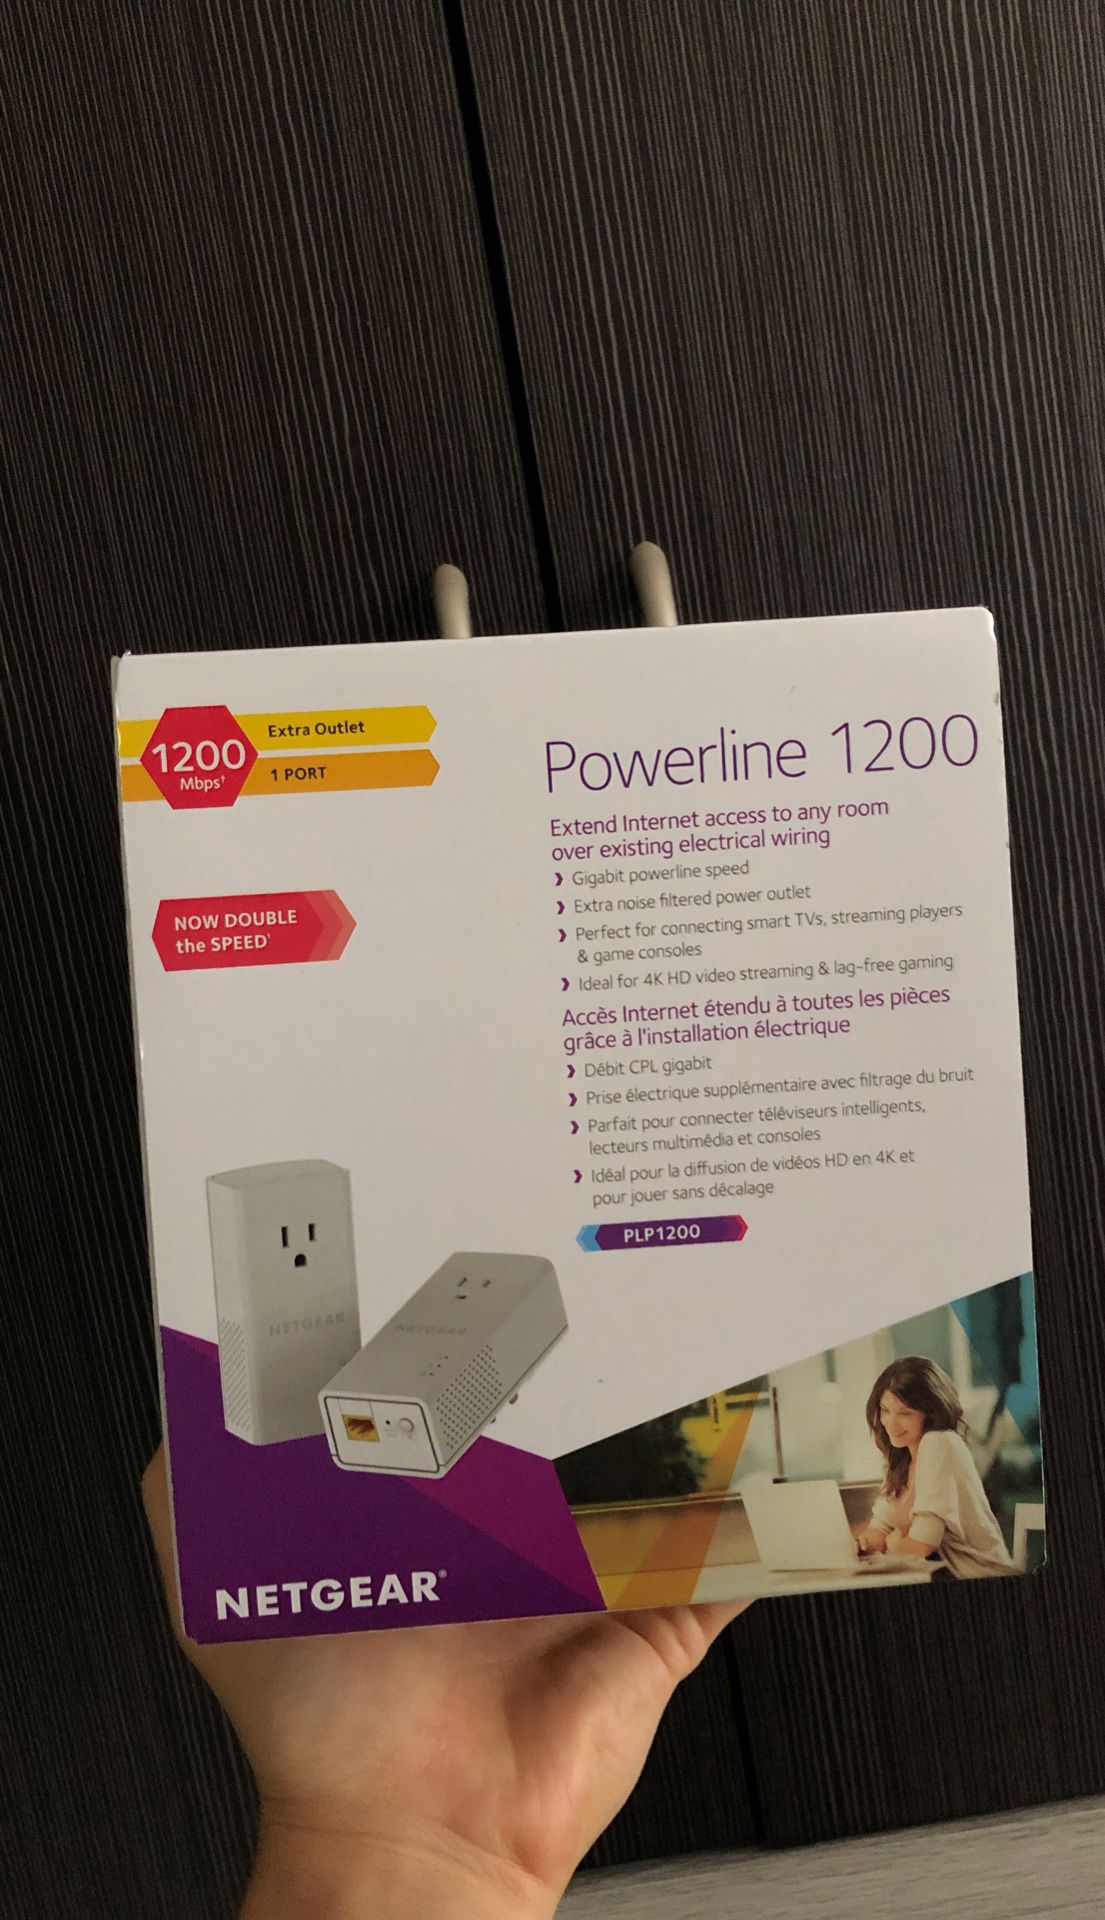 Netgear powerline 1200 (PLP 1200)